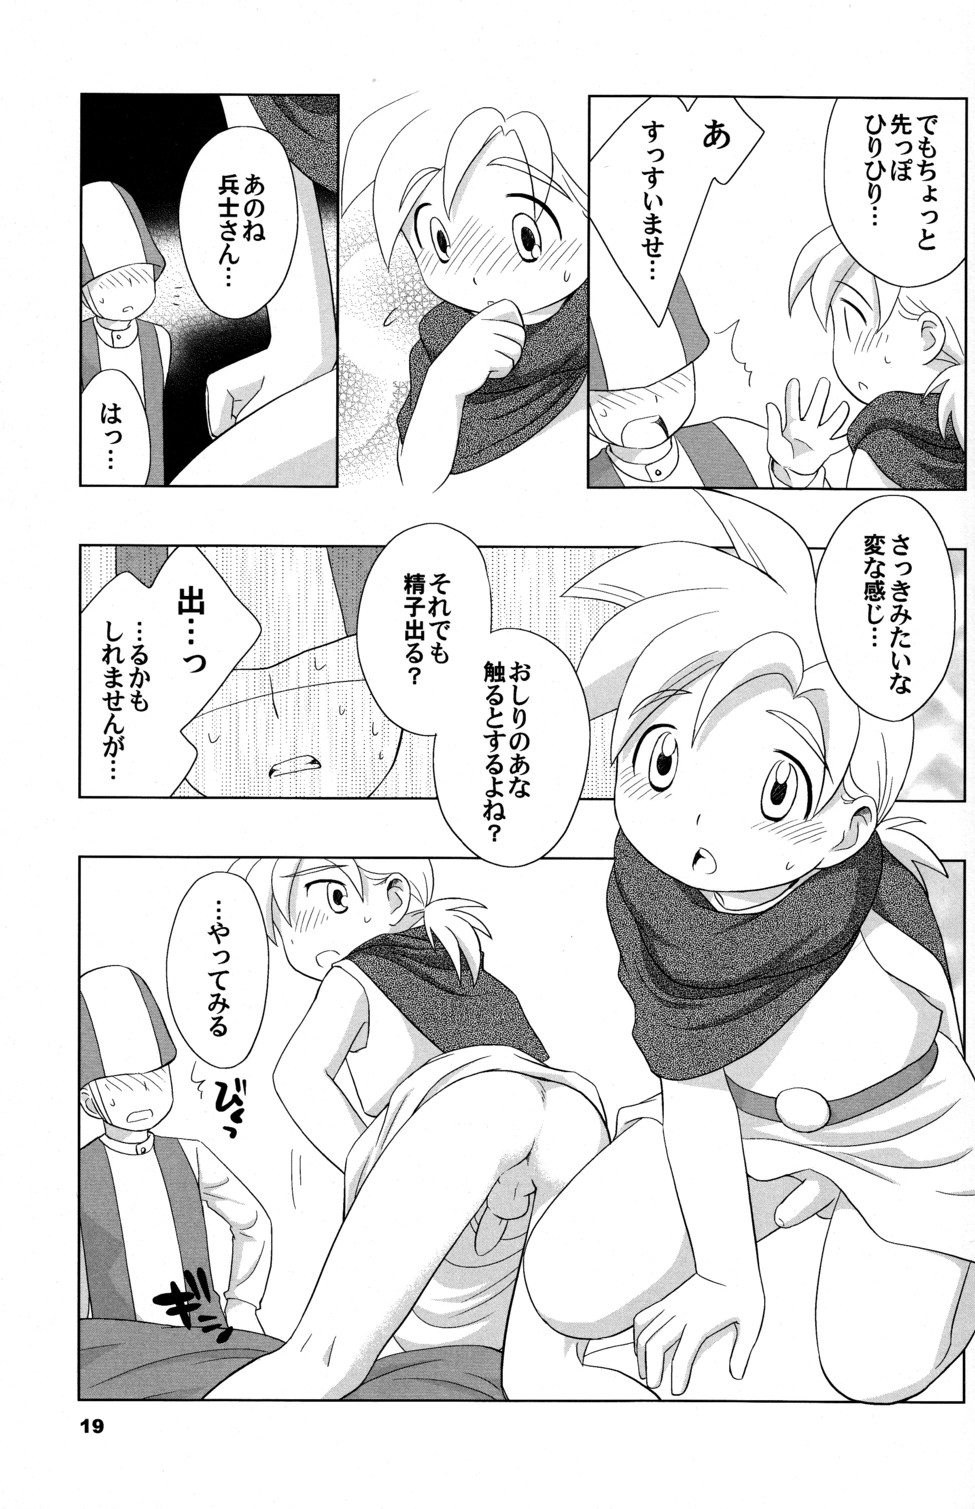 (Shotaket 10) [Tokuda (Ueda Yuu)] Hoshifuru Seisui (Dragon Quest V) page 19 full